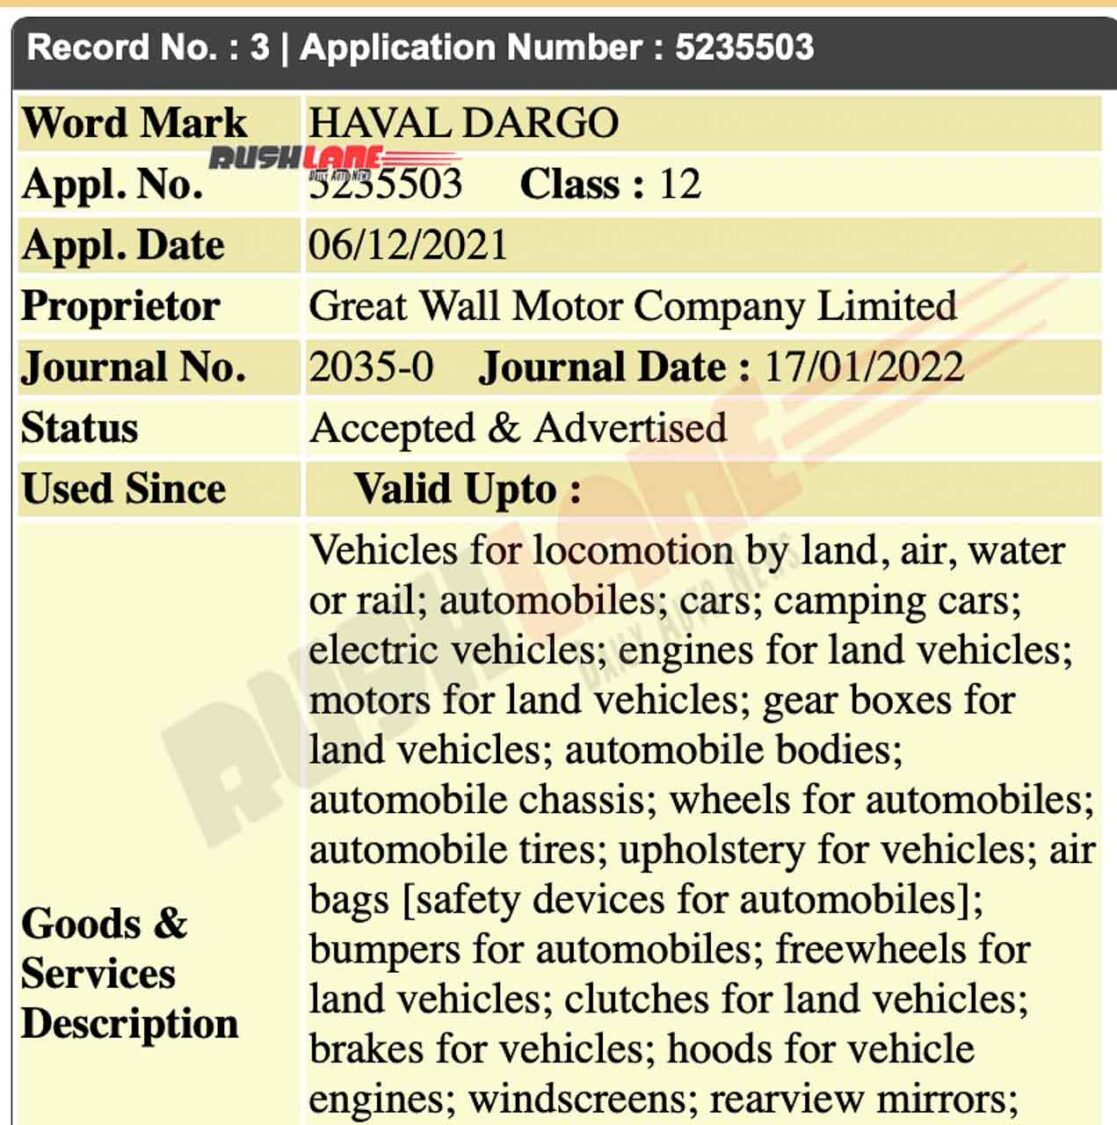 Haval Dorgo trademark filed in India